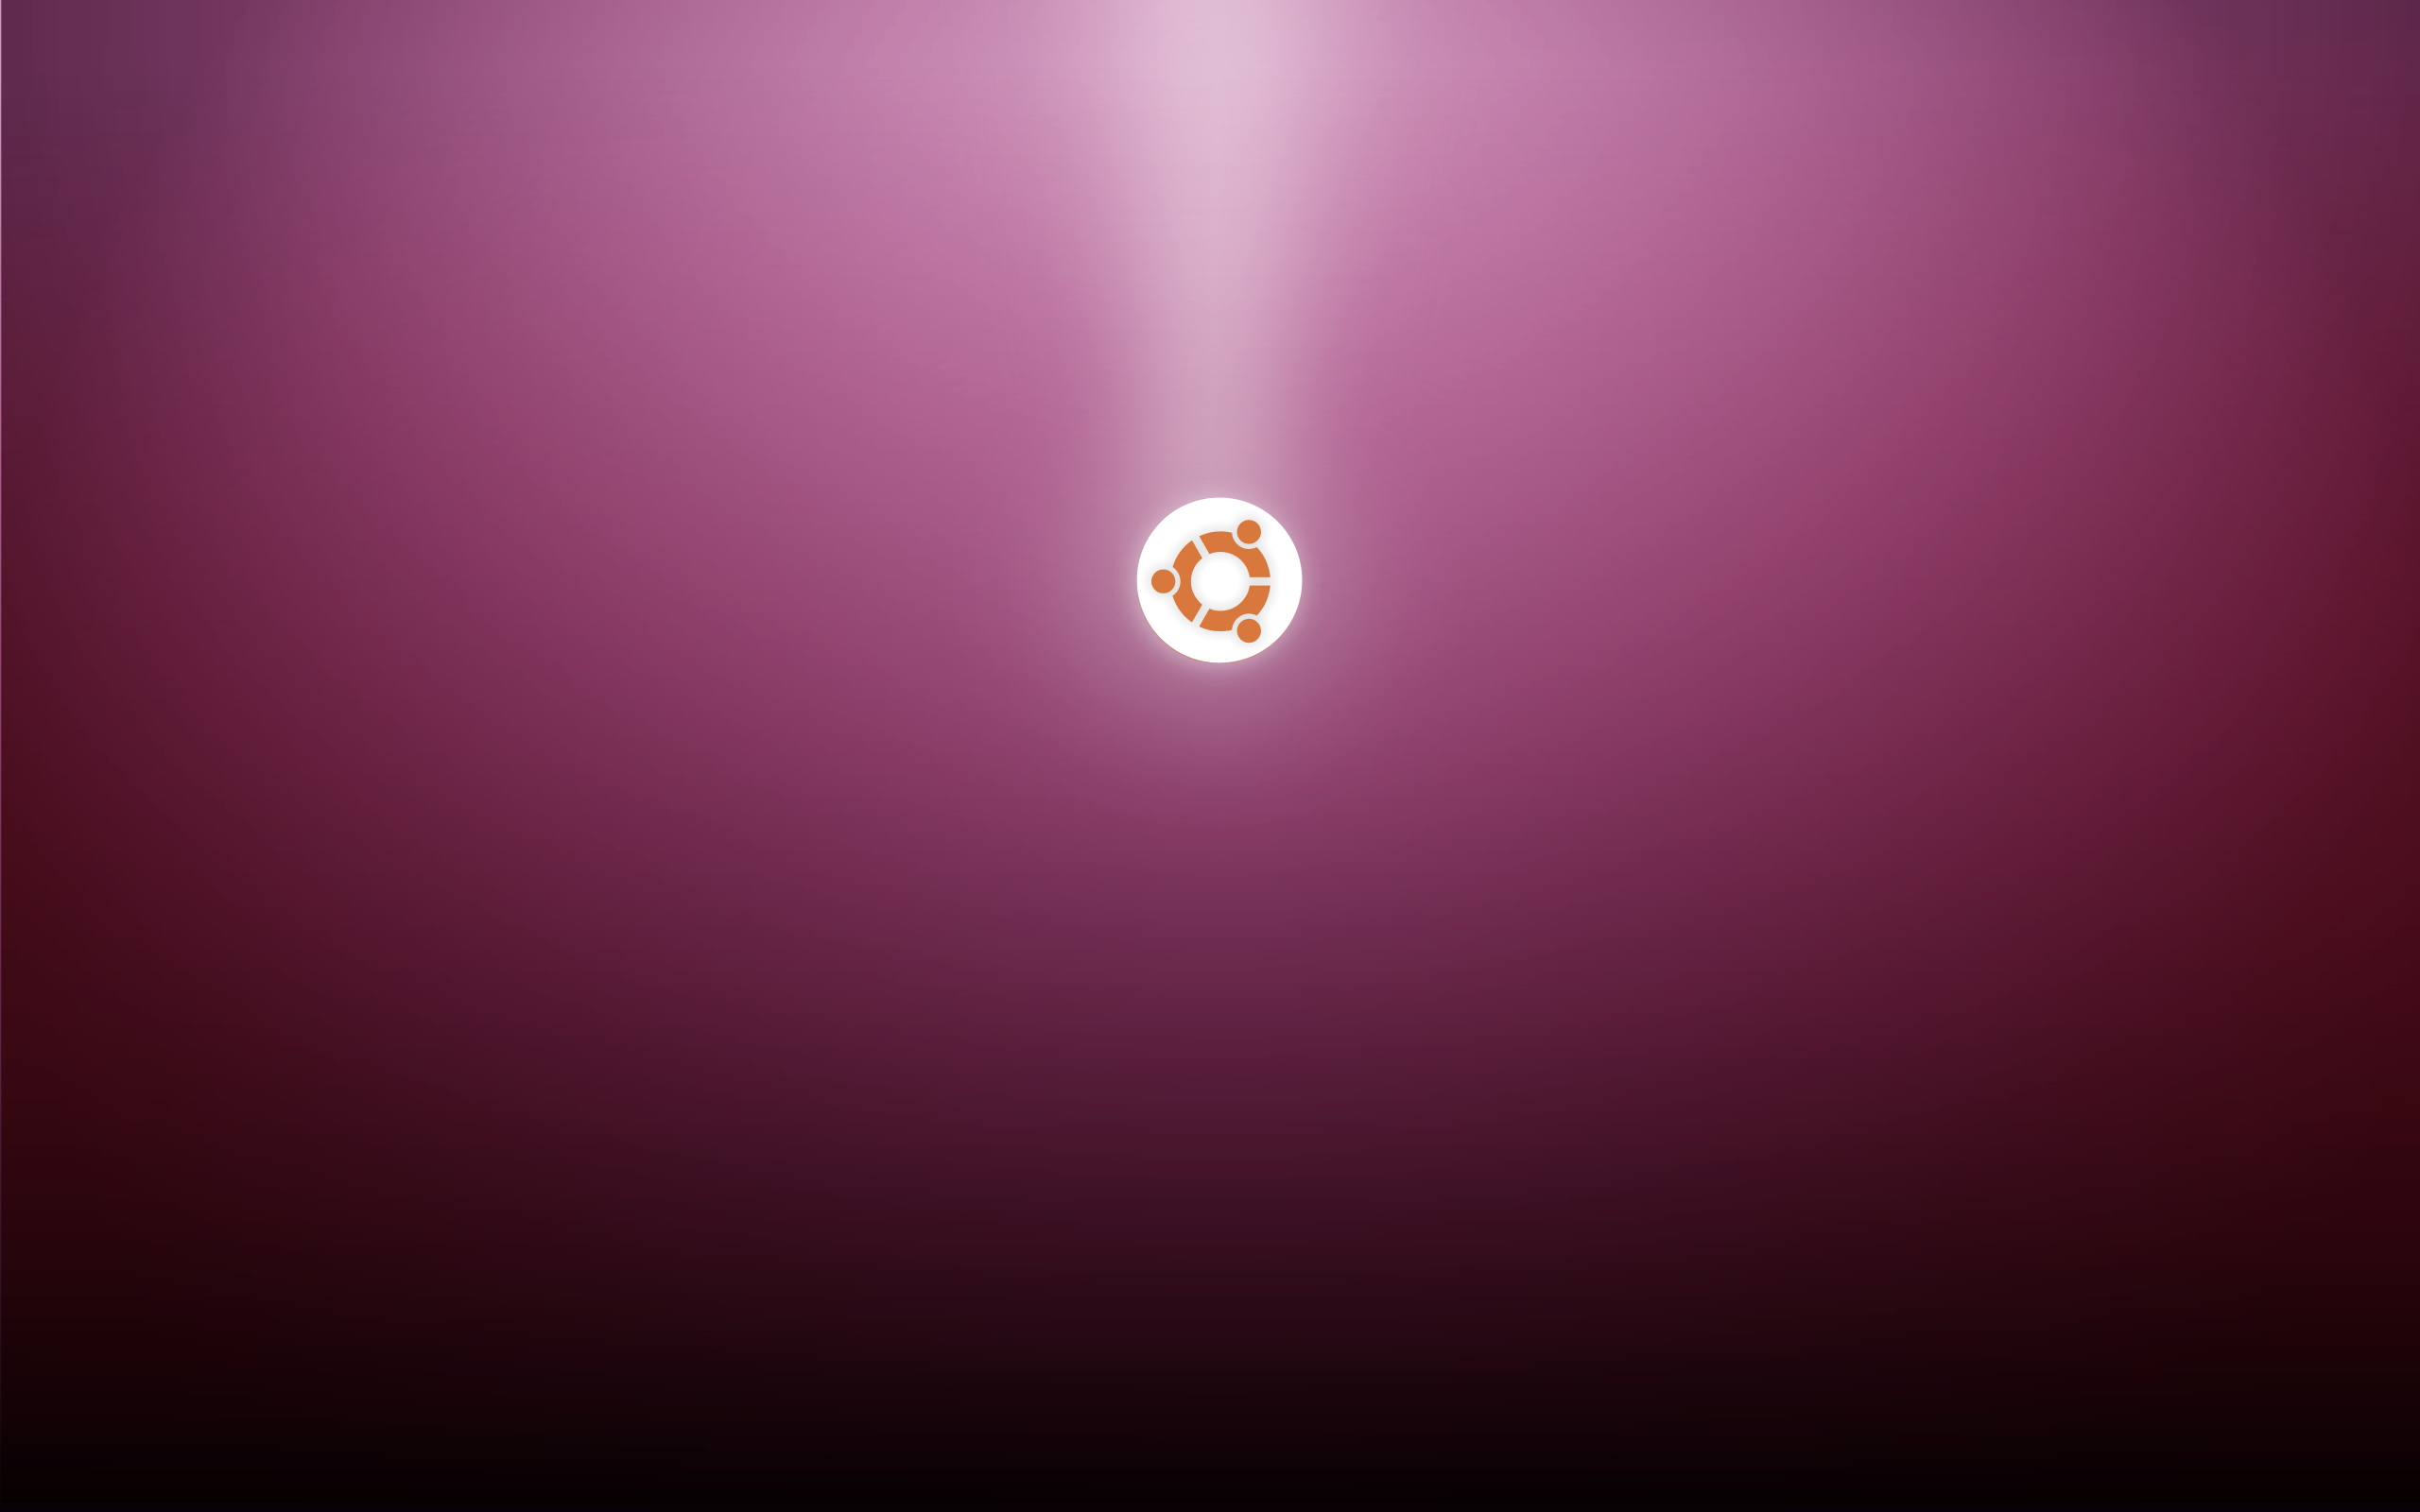 Ubuntu Wallpapers 25 - Best Wallpaper Collection